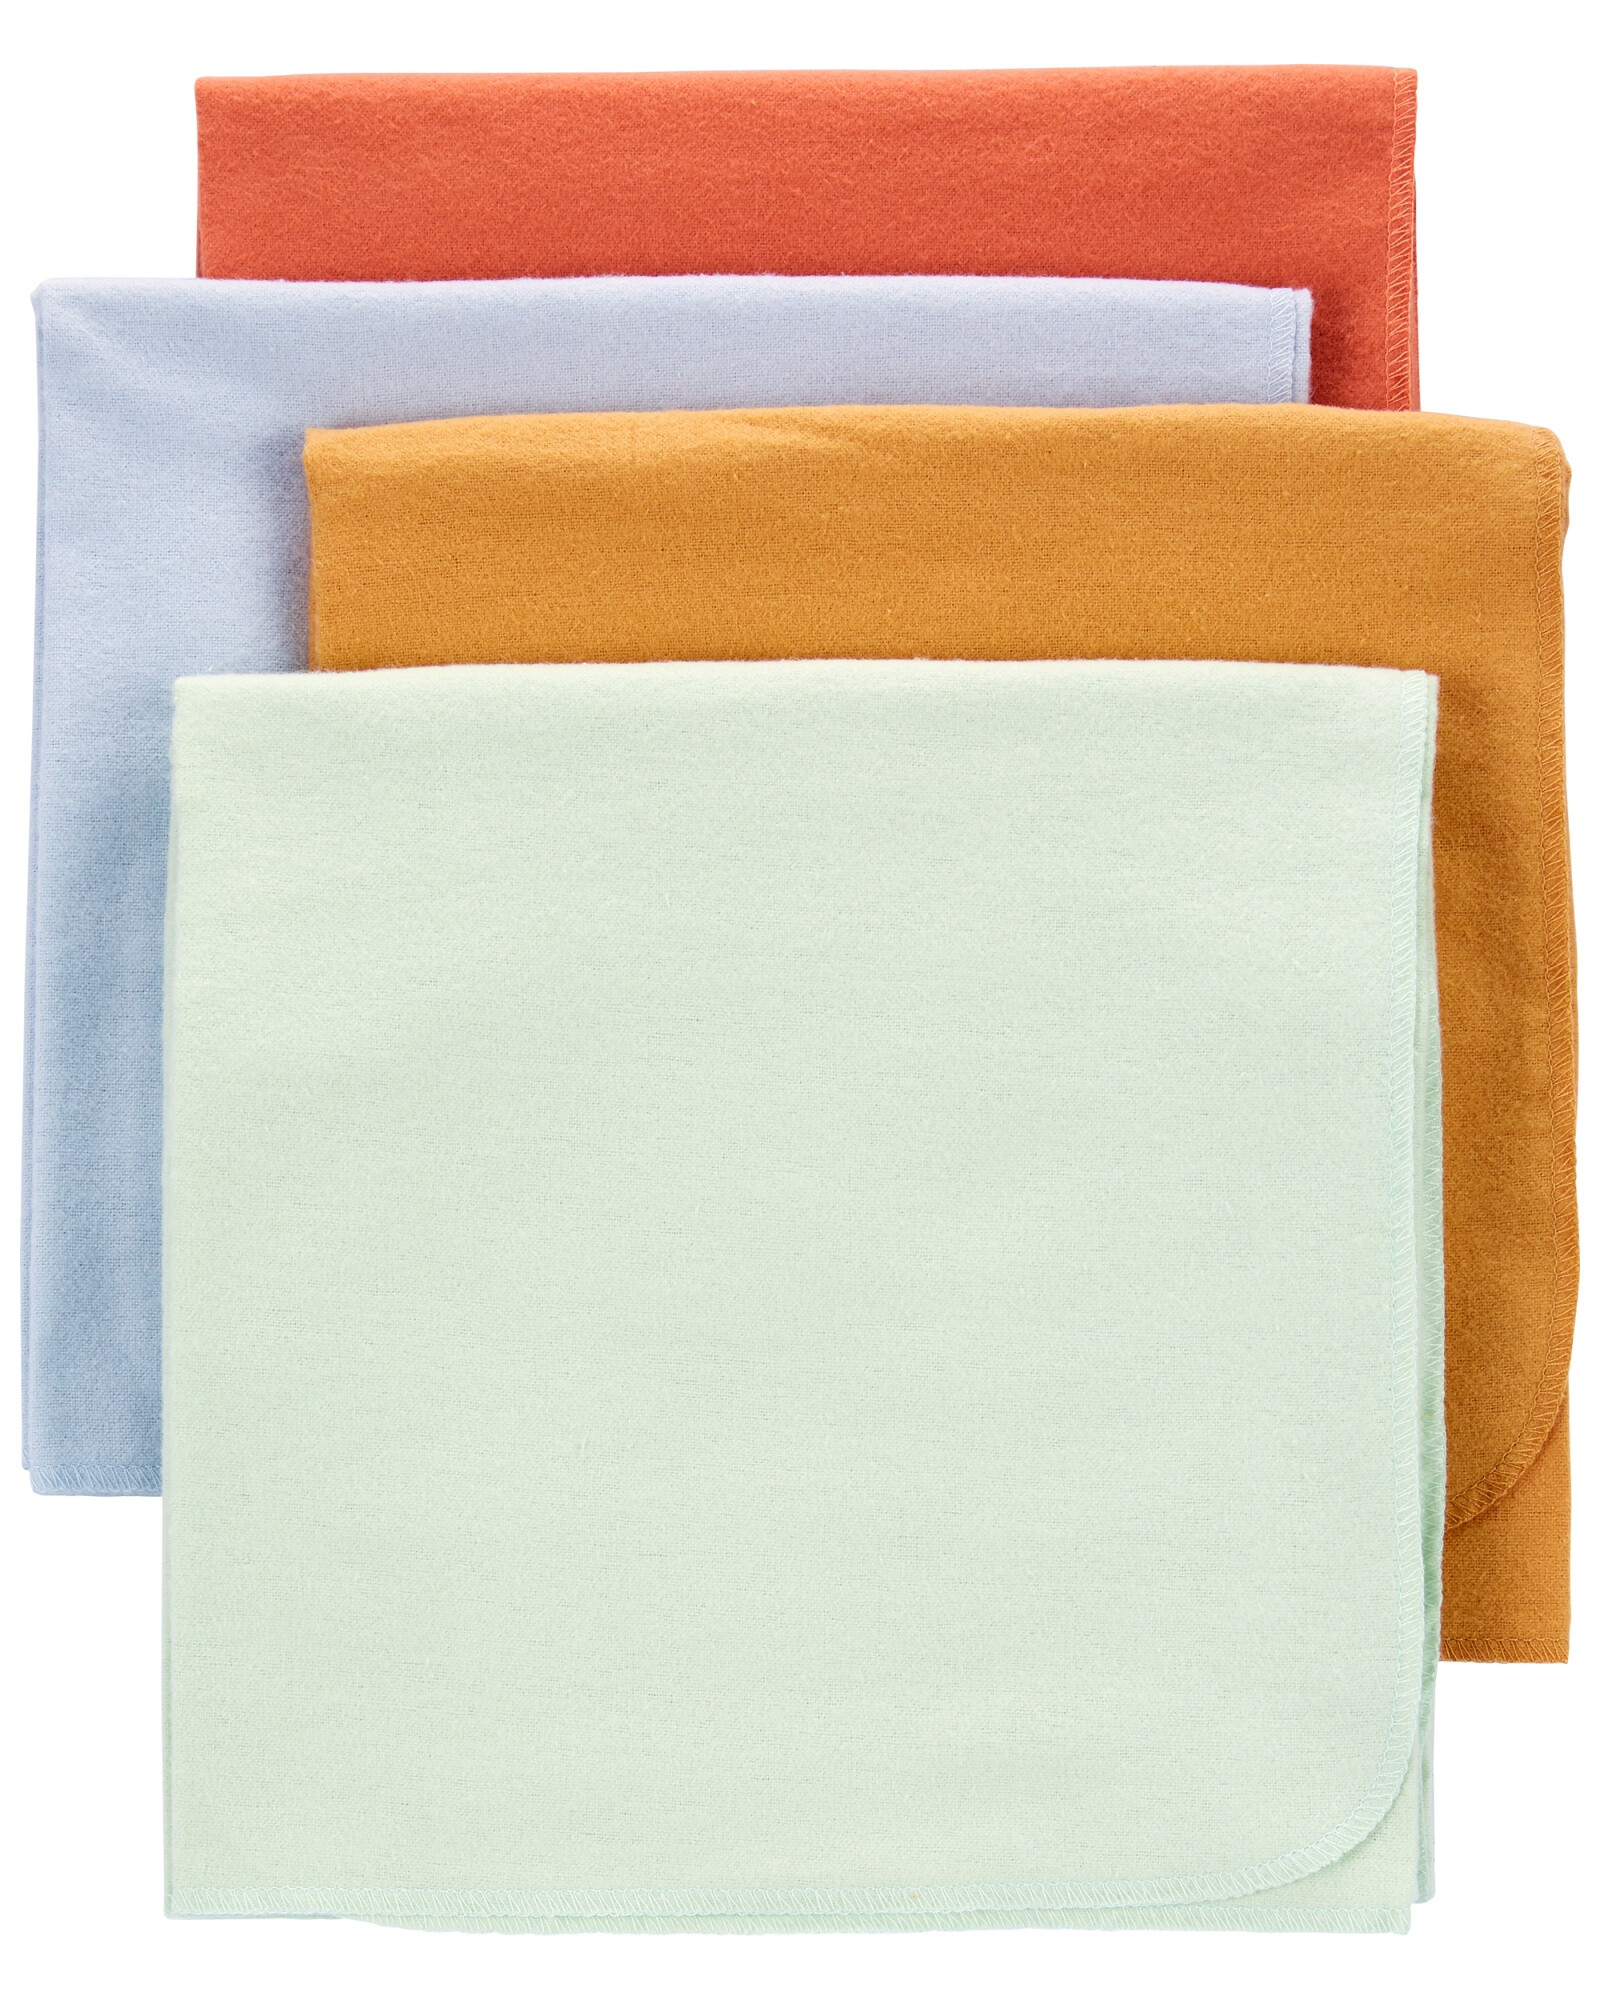 Pack cuatro mantas recibidoras de franela Sin color